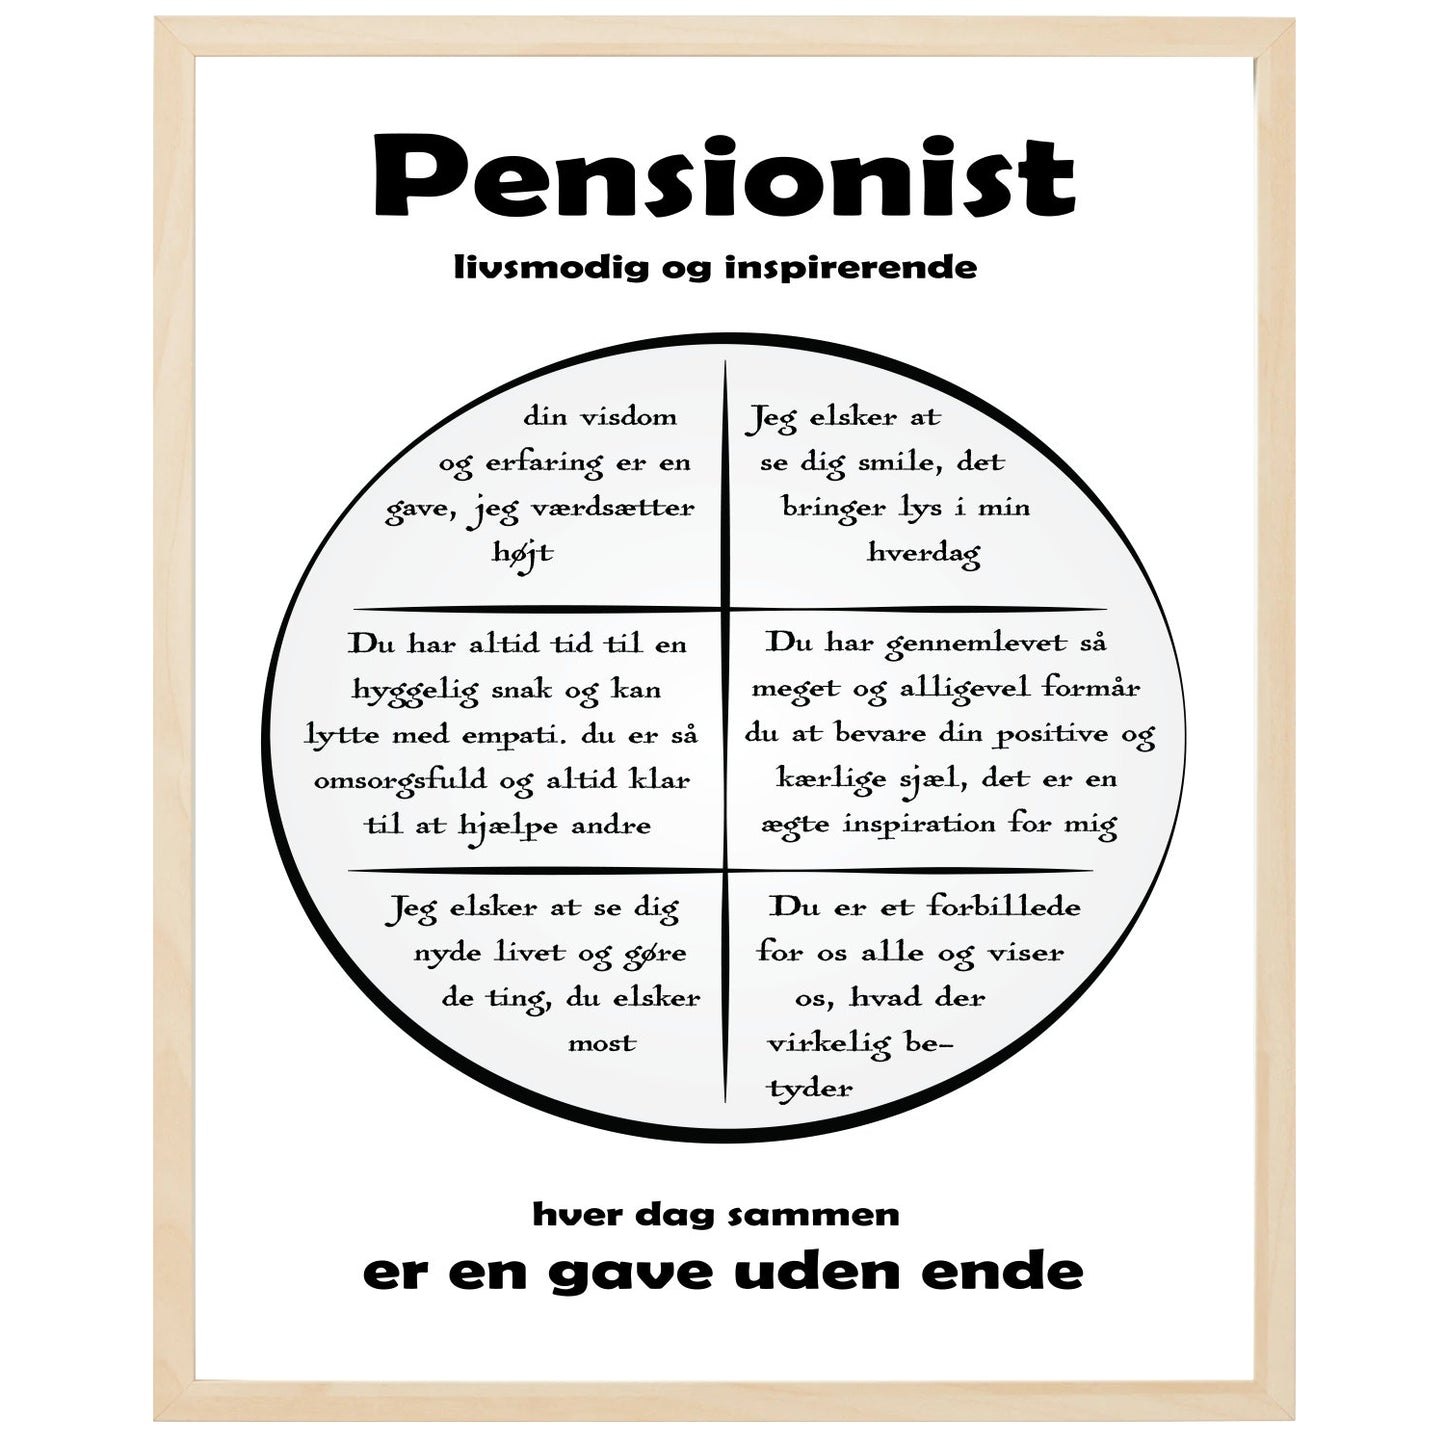 En plakat med overskriften Pensionist, en rustik cirkel og indeni cirklen mange positive sætninger som beskriver en Pensionist